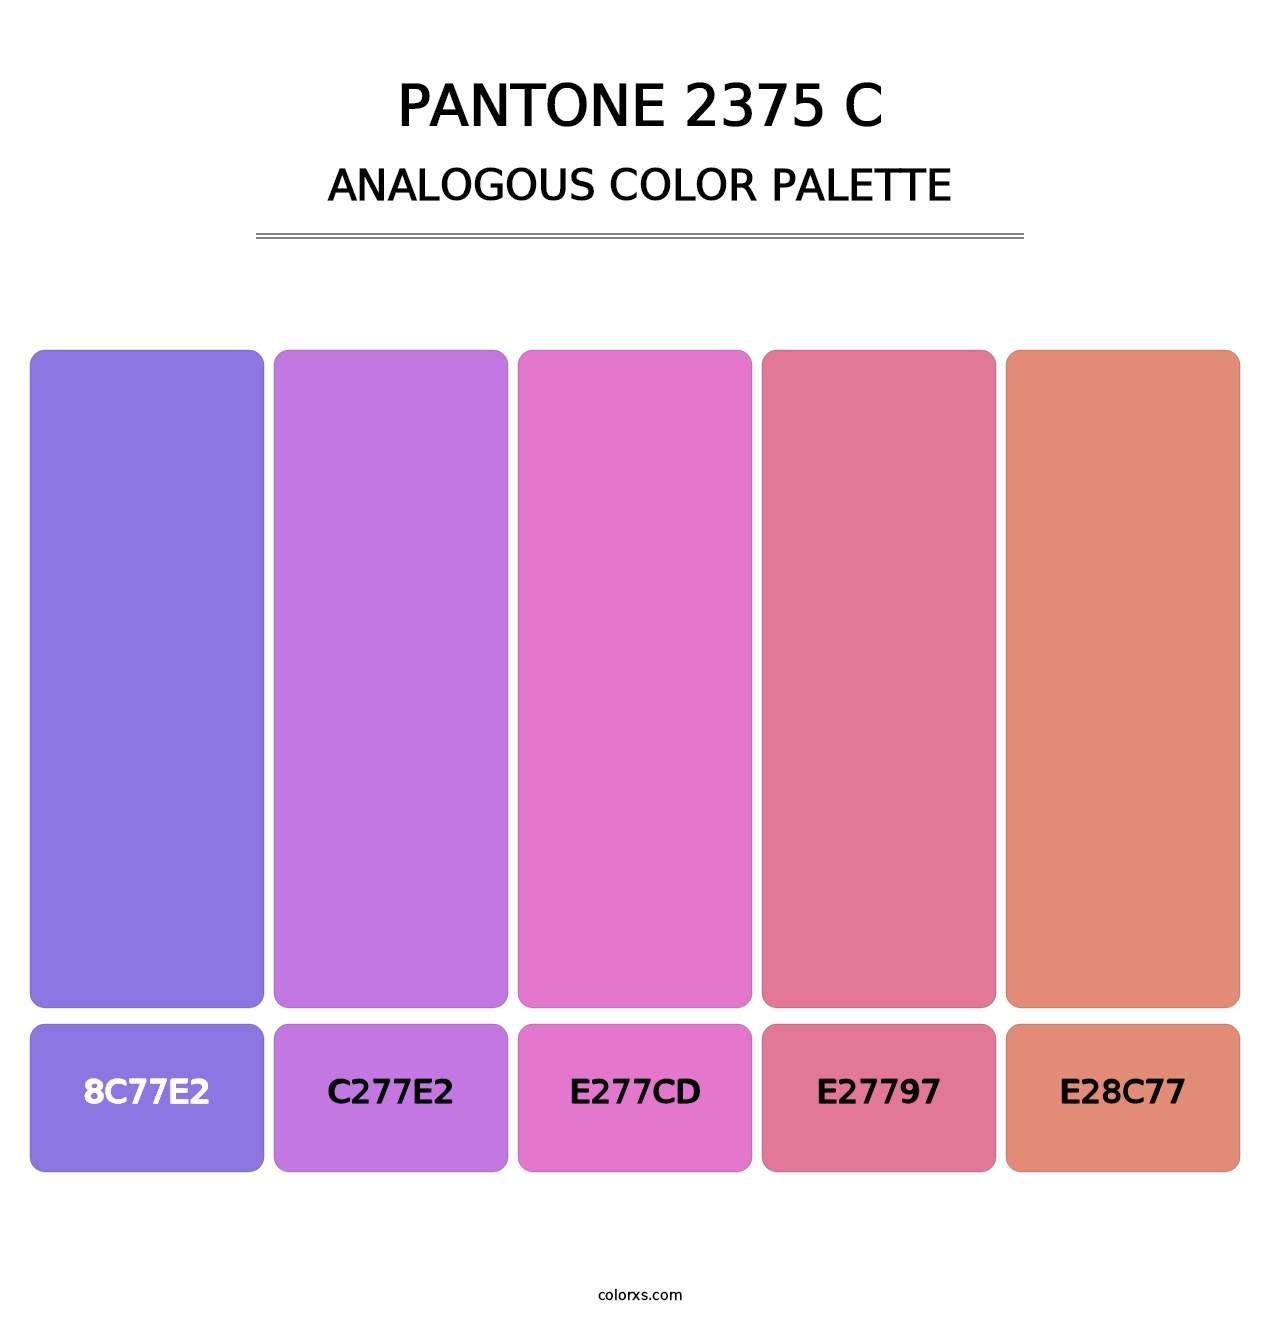 PANTONE 2375 C - Analogous Color Palette